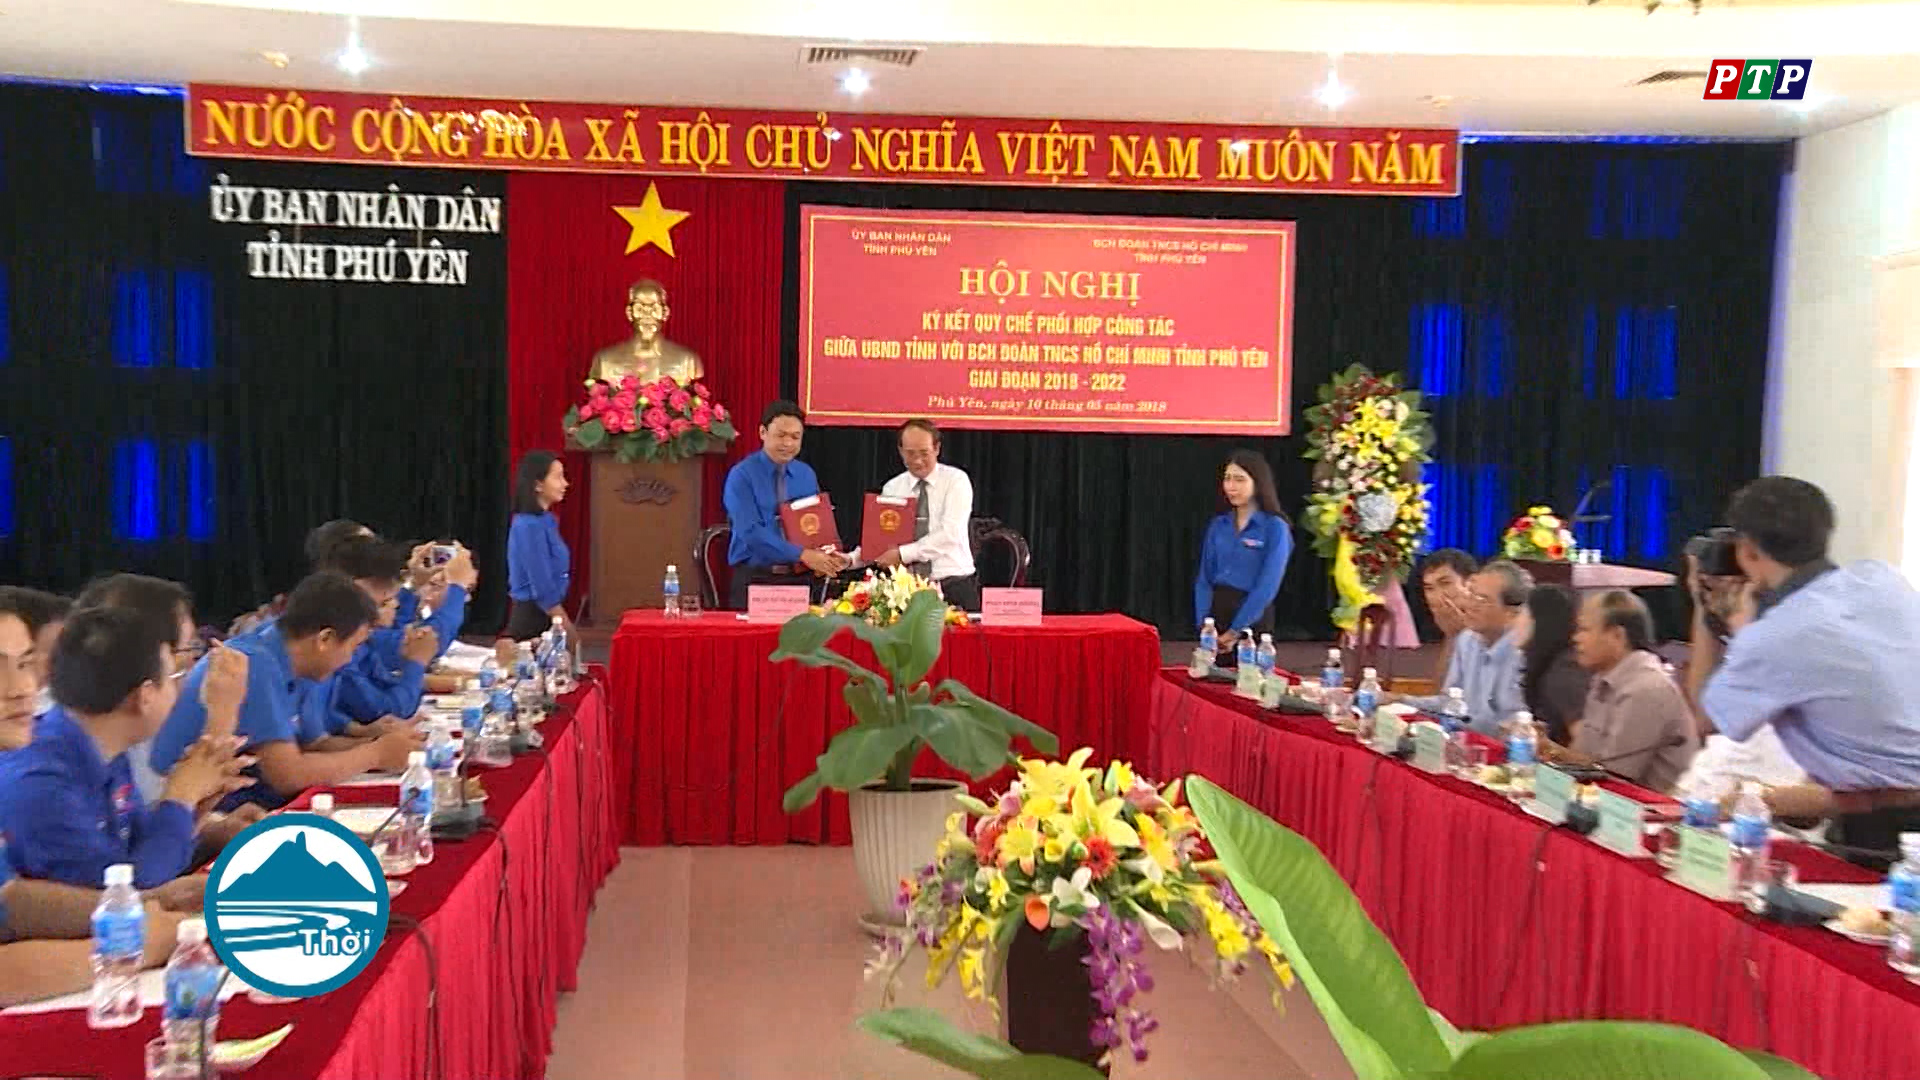 Hội nghị ký kết Quy chế phối hợp công tác giữa UBND tỉnh và Ban chấp hành Đoàn TNCS Hồ Chí Minh tỉnh Phú Yên giai đoạn 2018-2022